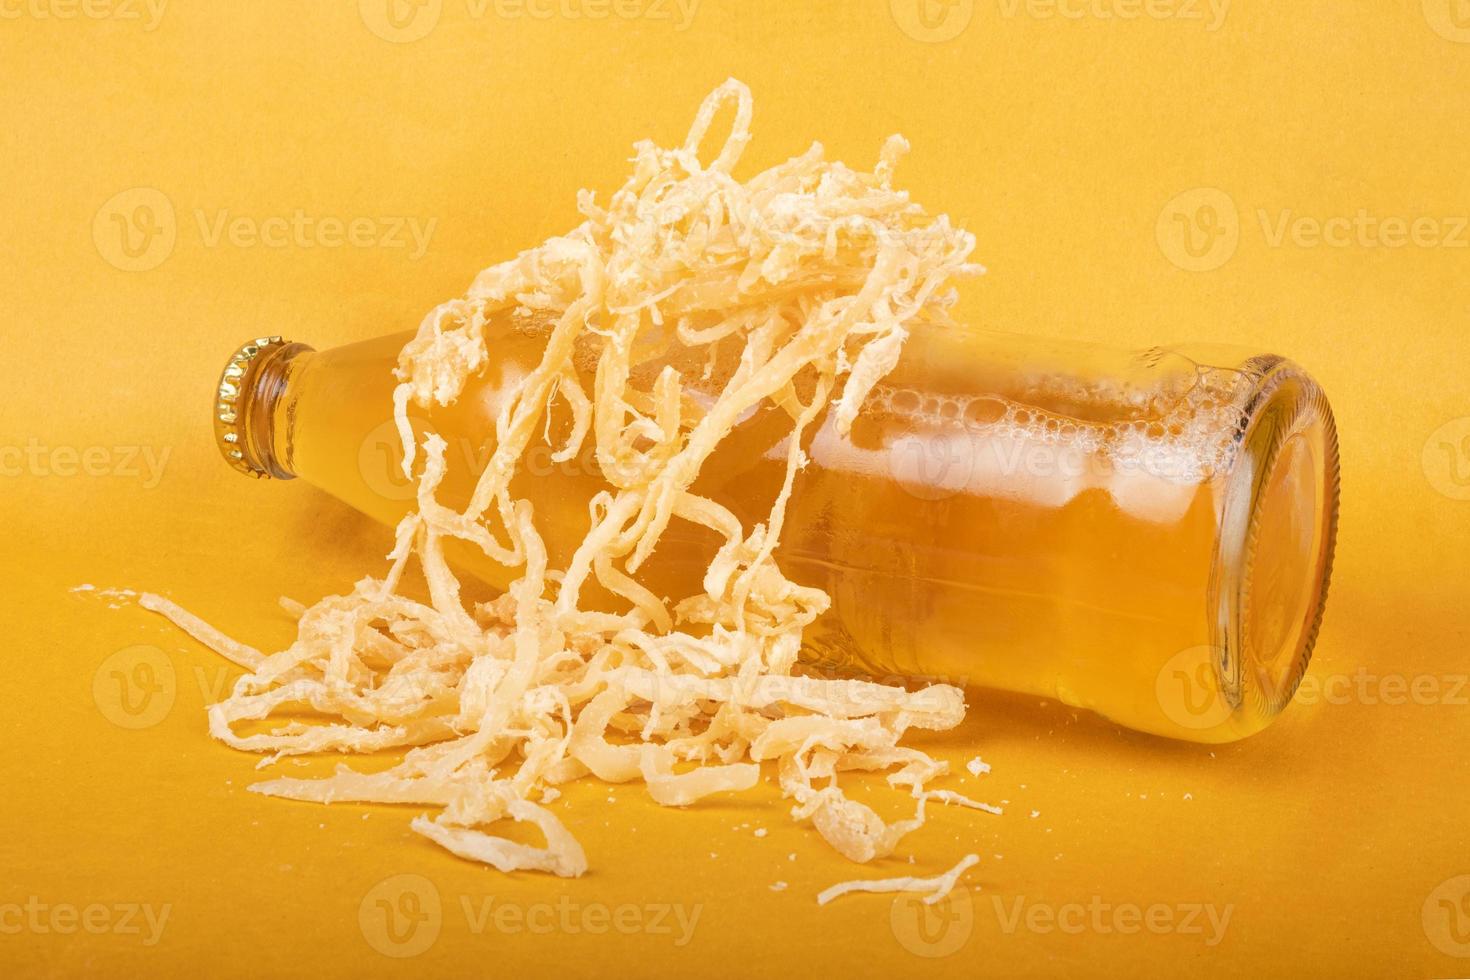 een fles light bier met gedroogde inktvis op gele achtergrond foto